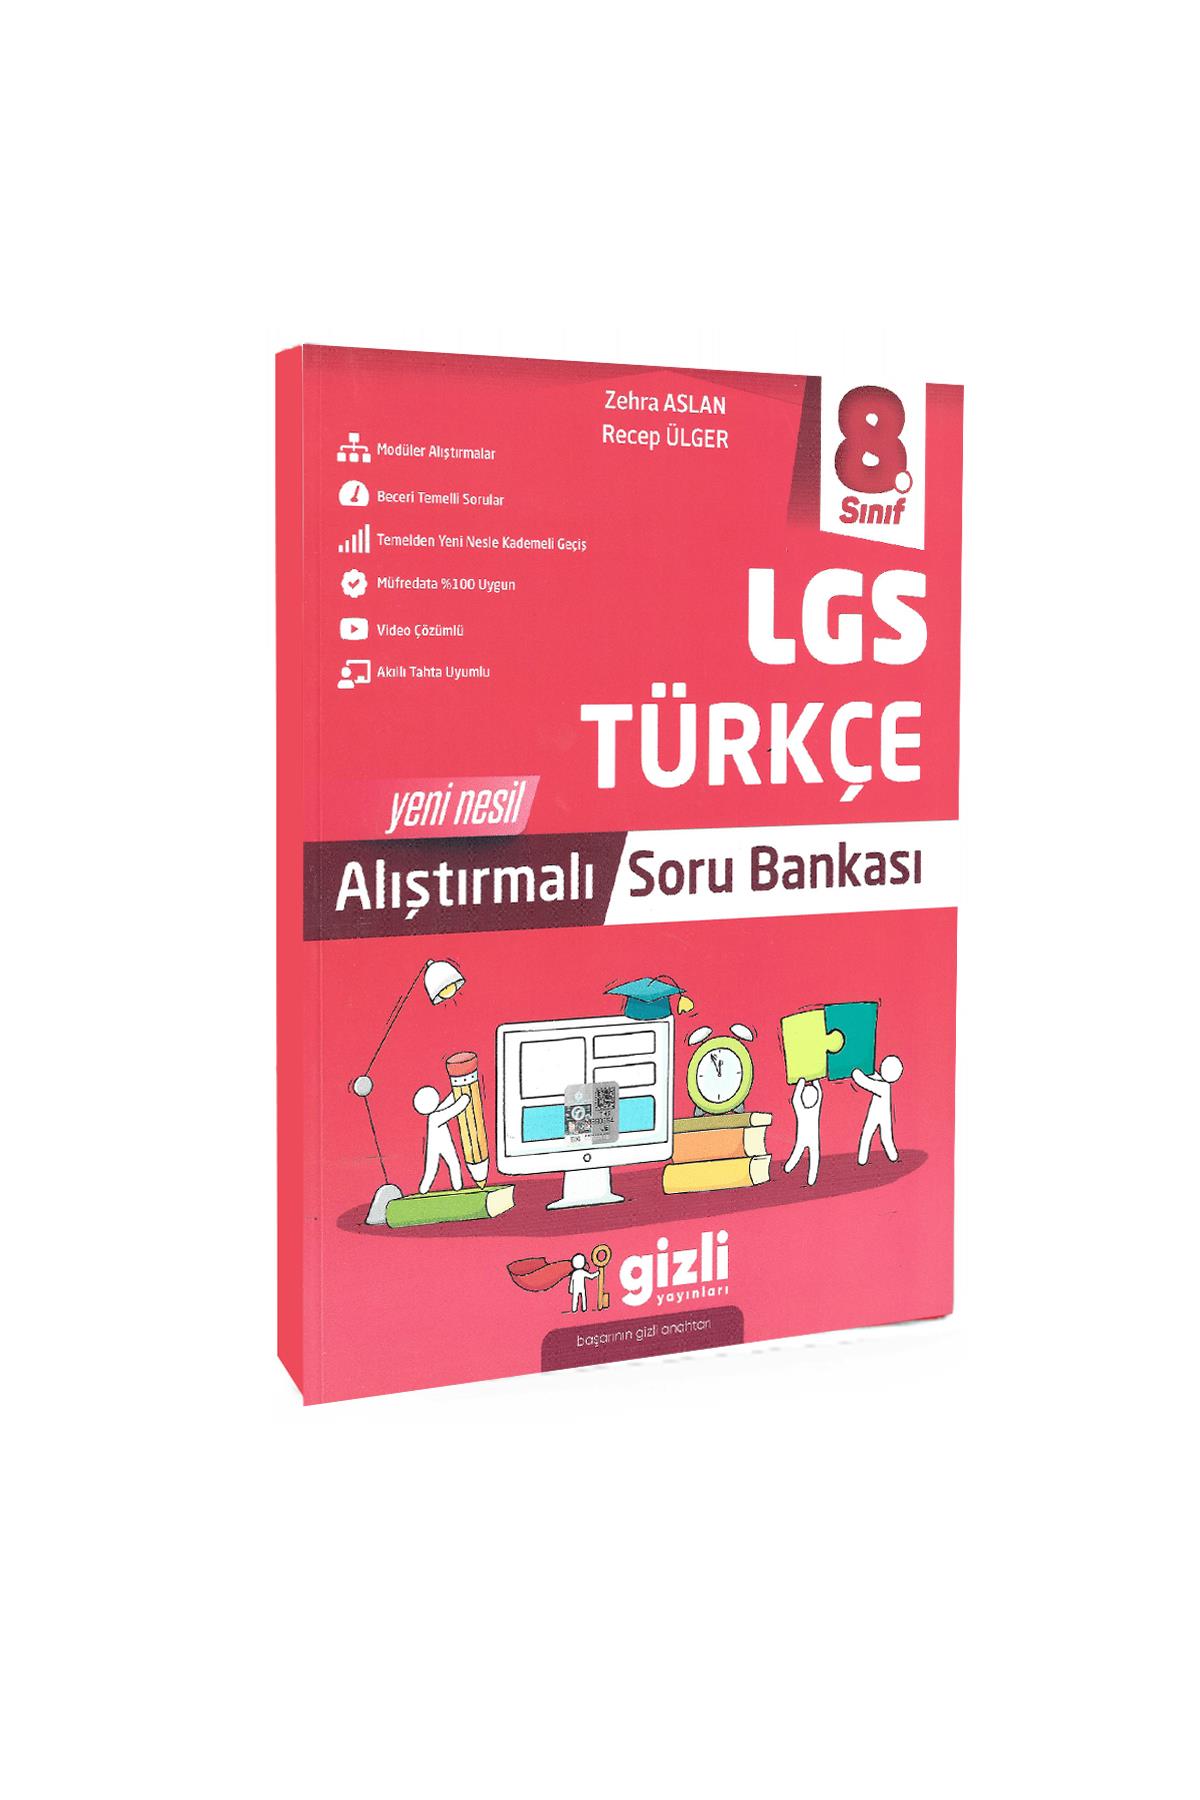 Gizli Yayınları 8. Sınıf Türkçe Lgs Yeni Nesil Alıştırmalı Soru Bankası